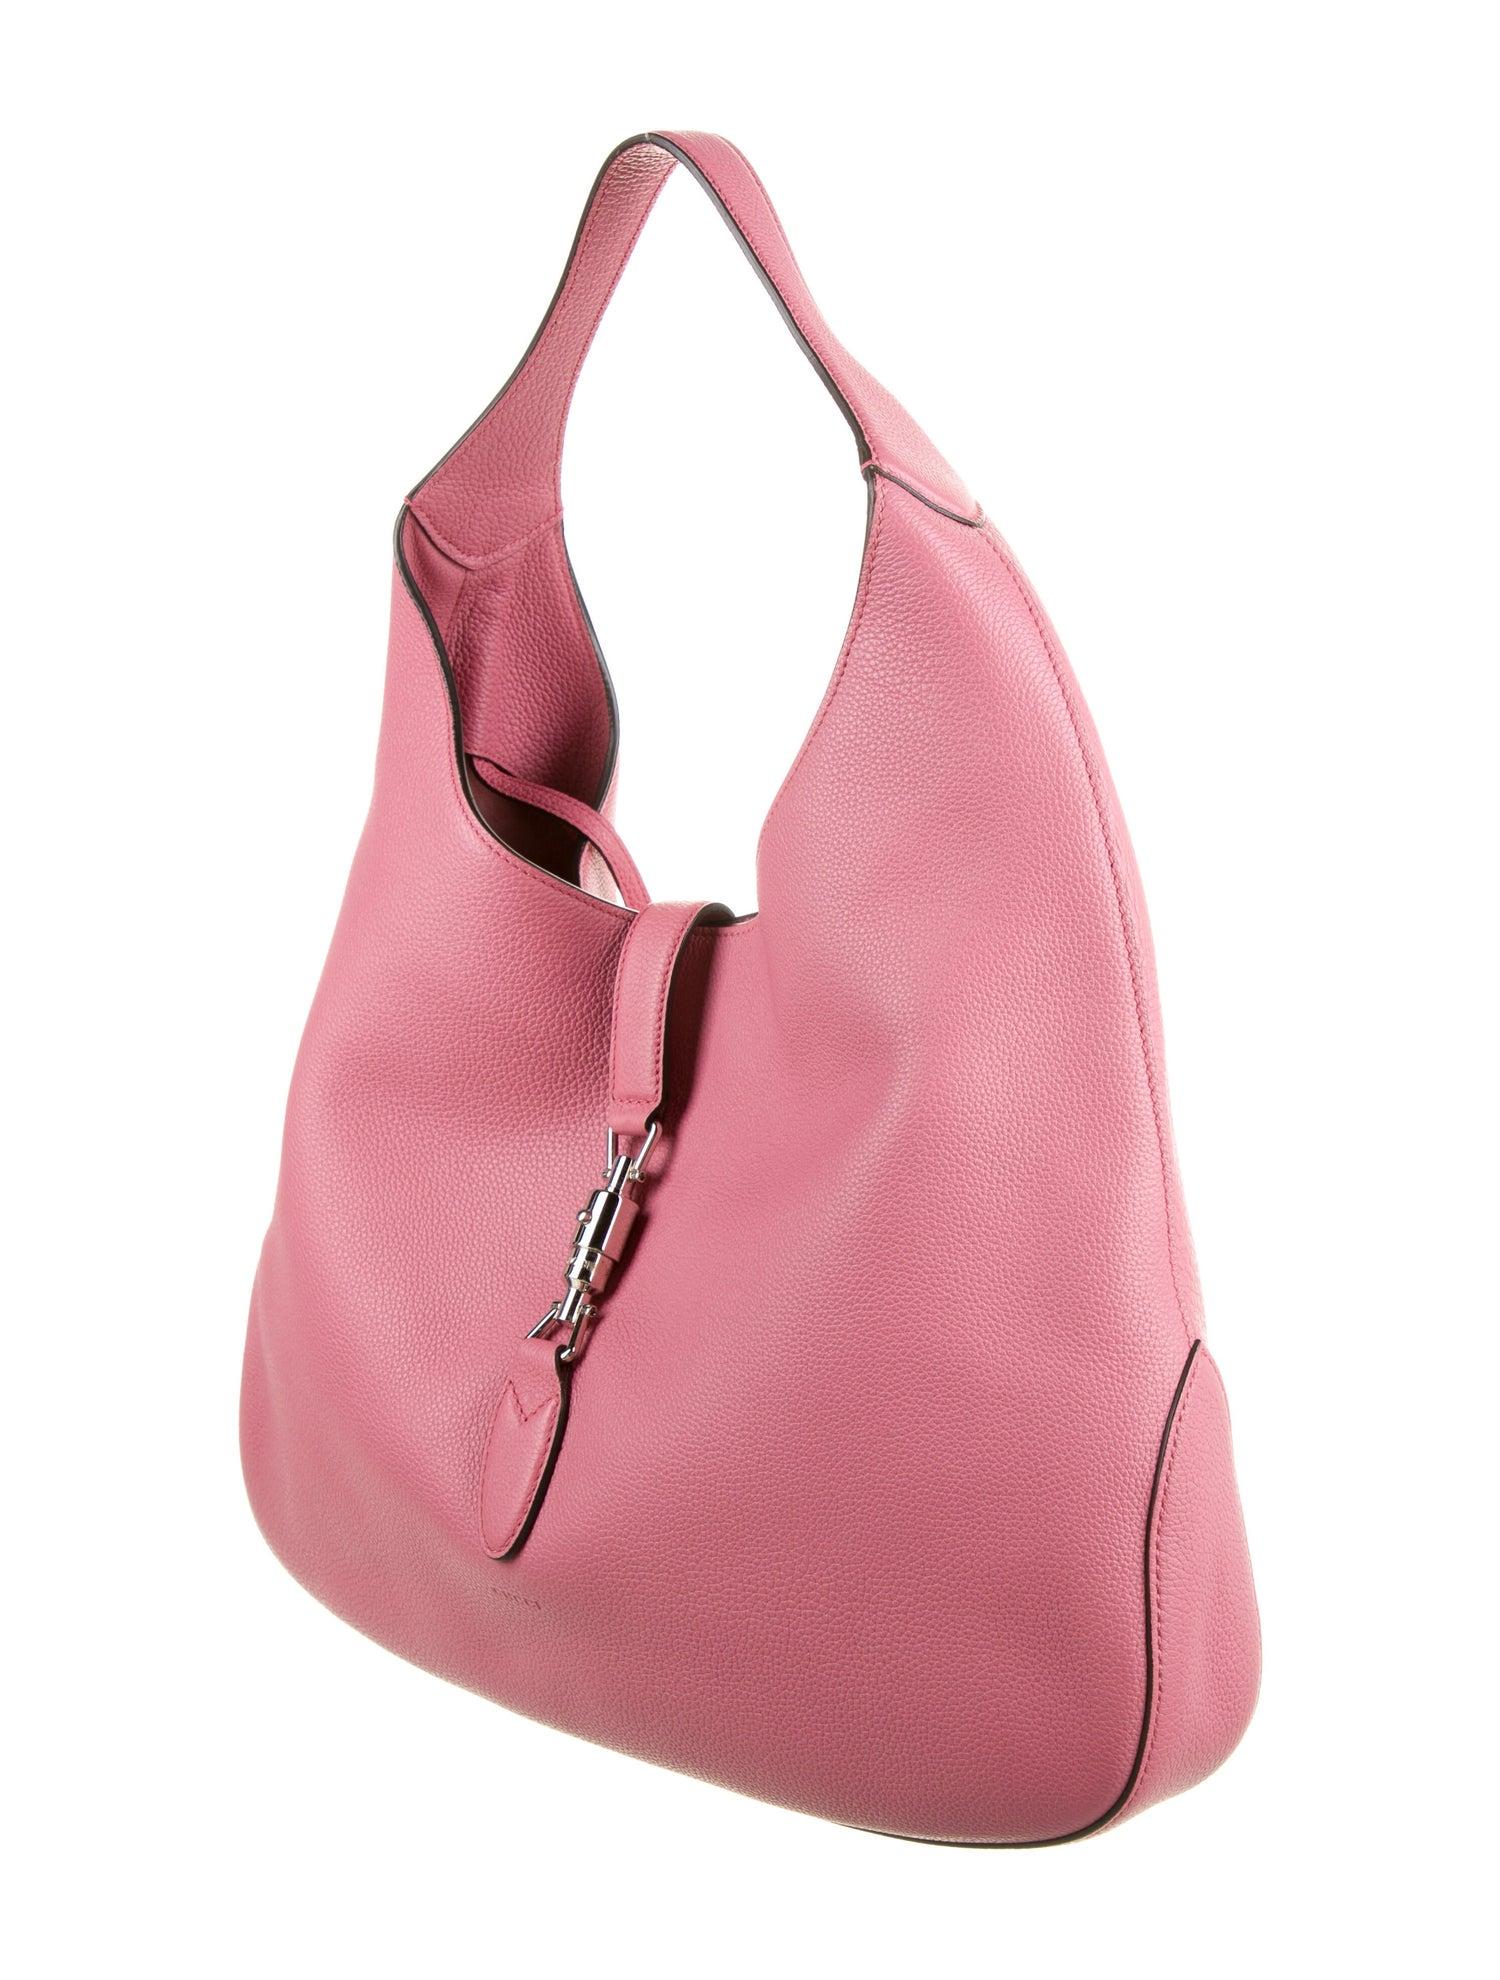 Nouveauté Gucci extra large sac Jackie O Gaga en cuir rose 3595 $ automne 2014 en vente 1